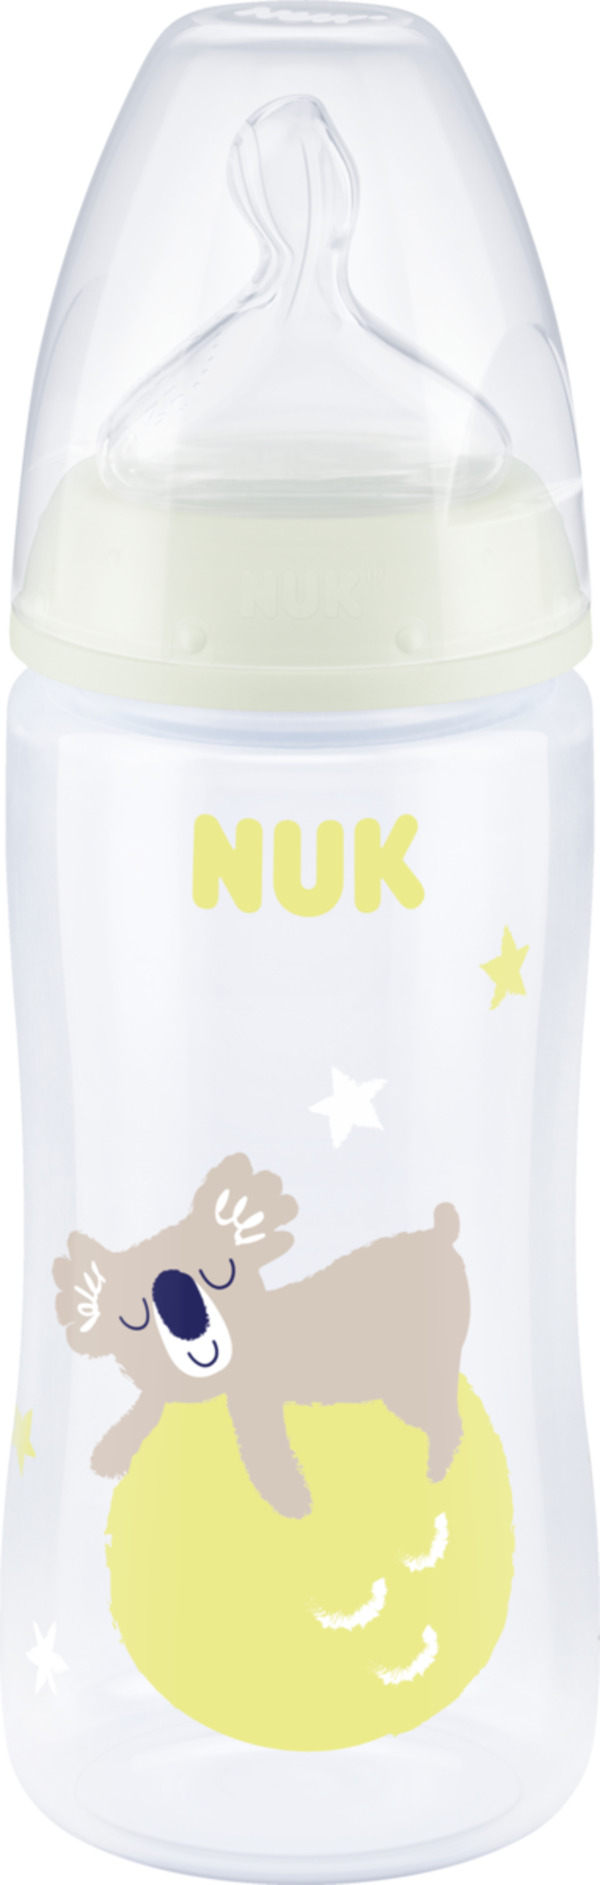 Bild 1 von NUK First Choice+ Night Babyflasche mit Leuchteffekt und Temperature Control, 0-6 Monate, gelb